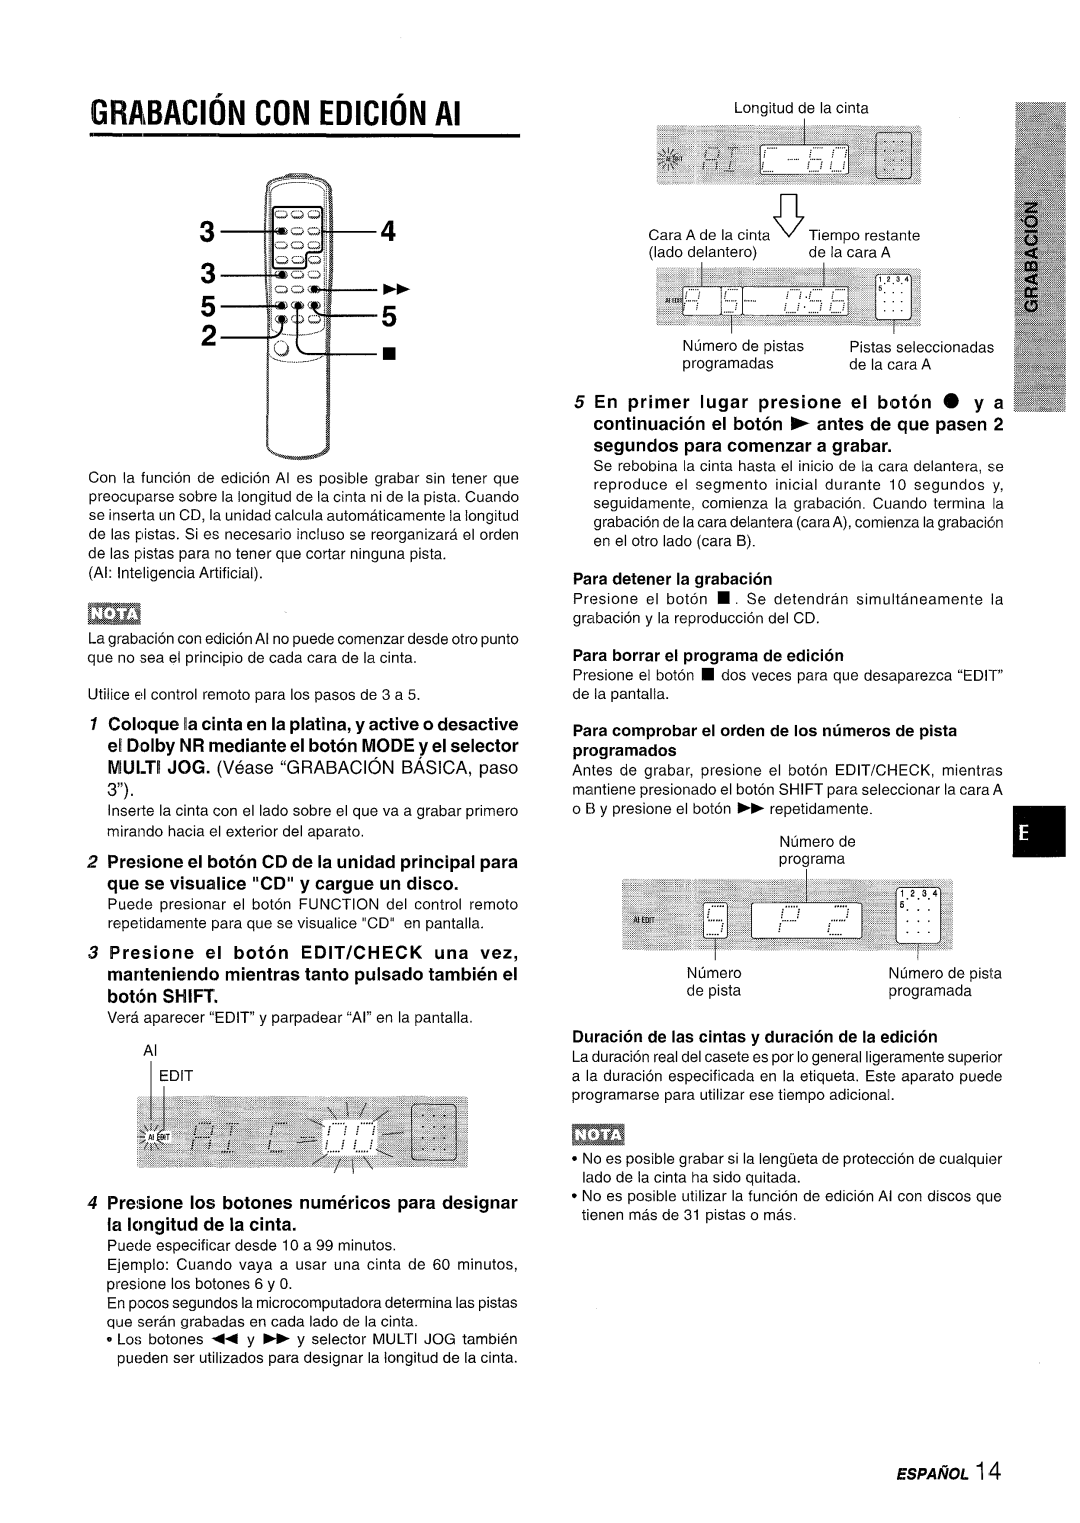 Aiwa XR-M35 manual GRABACION CON EDICION Al, Presione el boton CD de la unidad principal para, bot6n SHIFT, ESPAflOL 